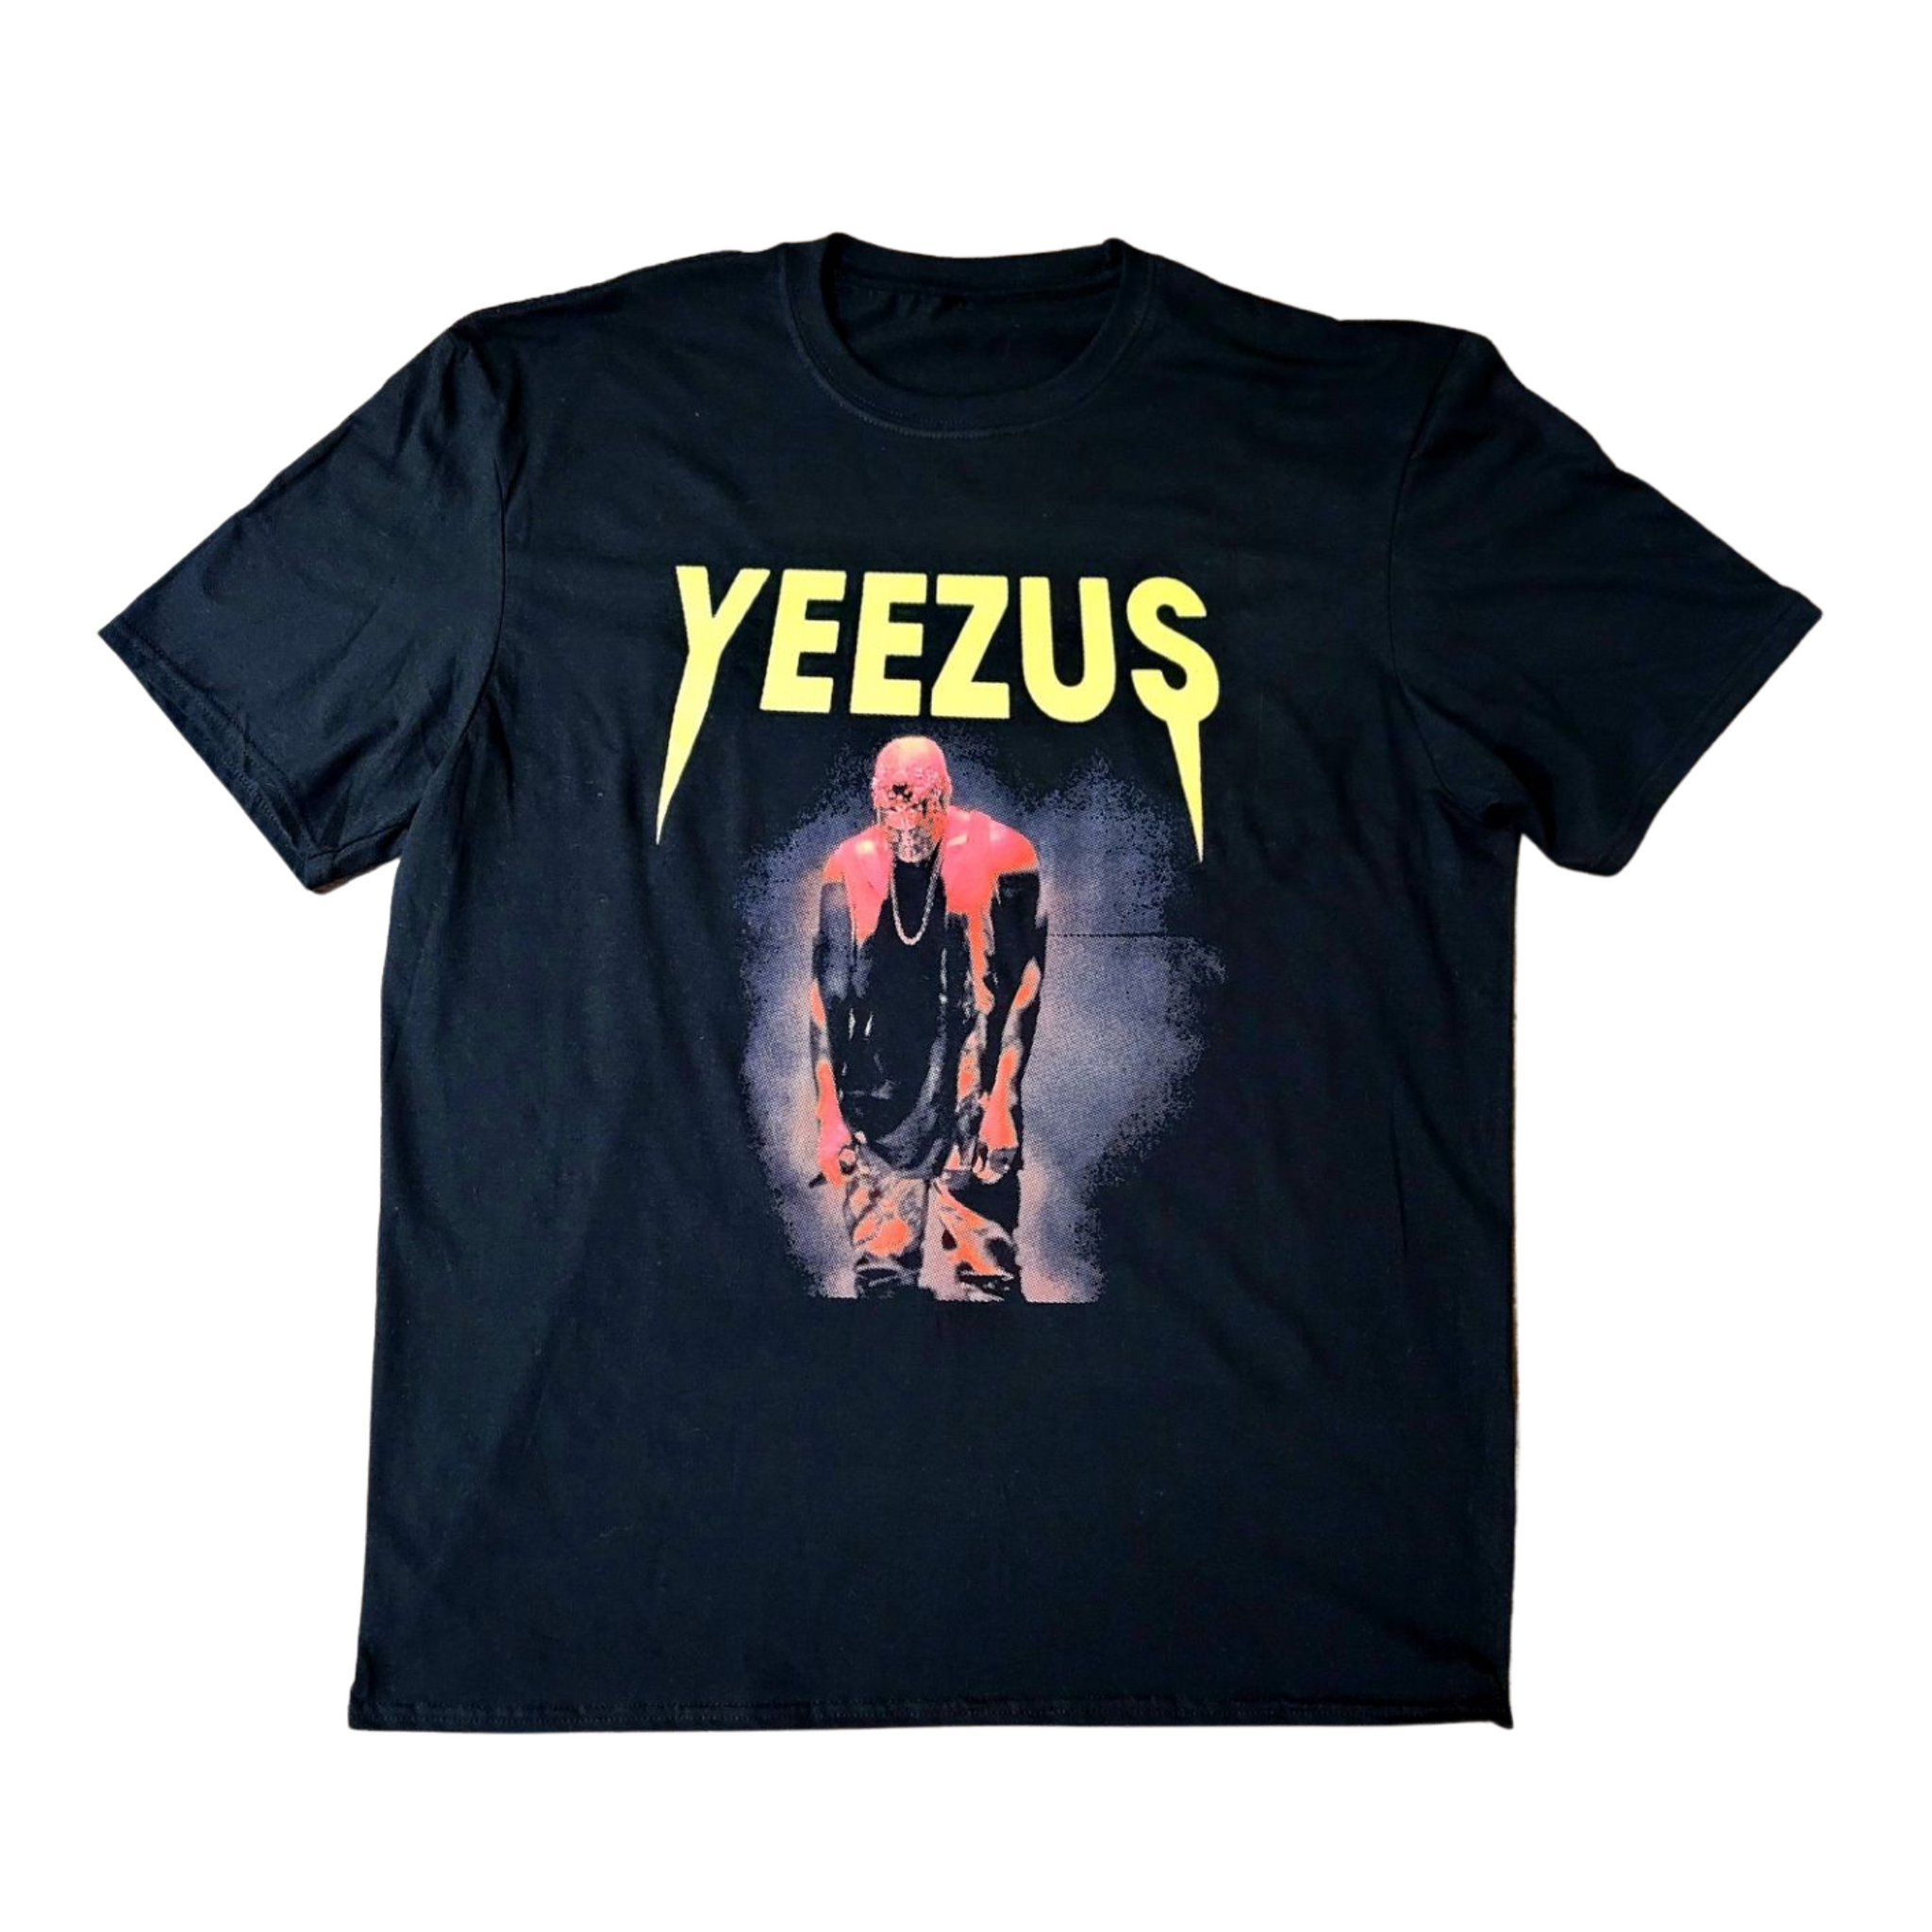 Authentic YEEZUS Tour Lightning Storm Tee - Yeezy 2 KANYE WEST Size MEDIUM